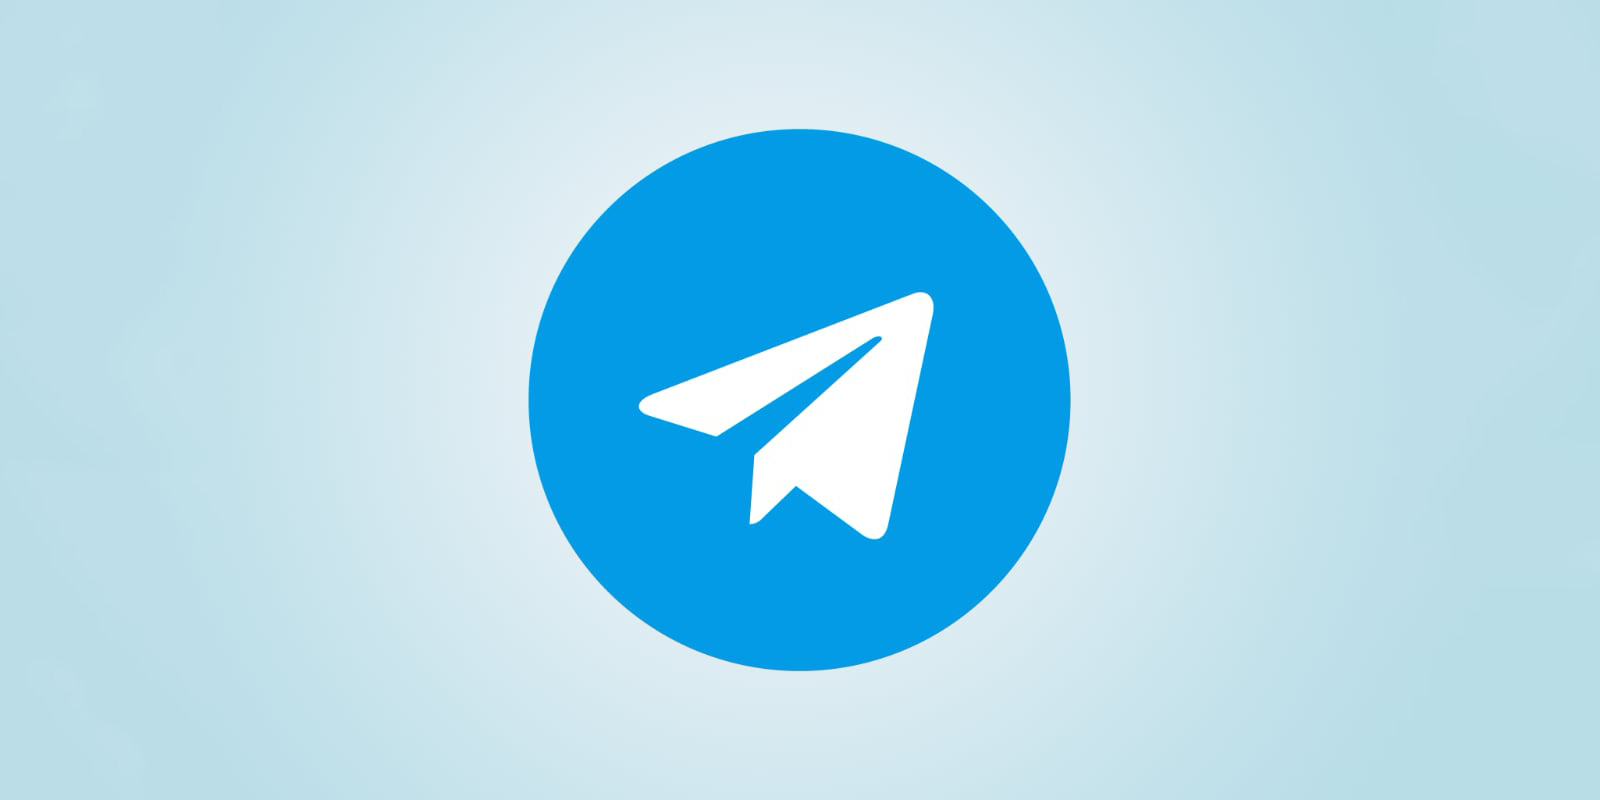 В Telegram появились платные фото и видео,  сворачиваемые мини-приложения и поиск историй по хештегам